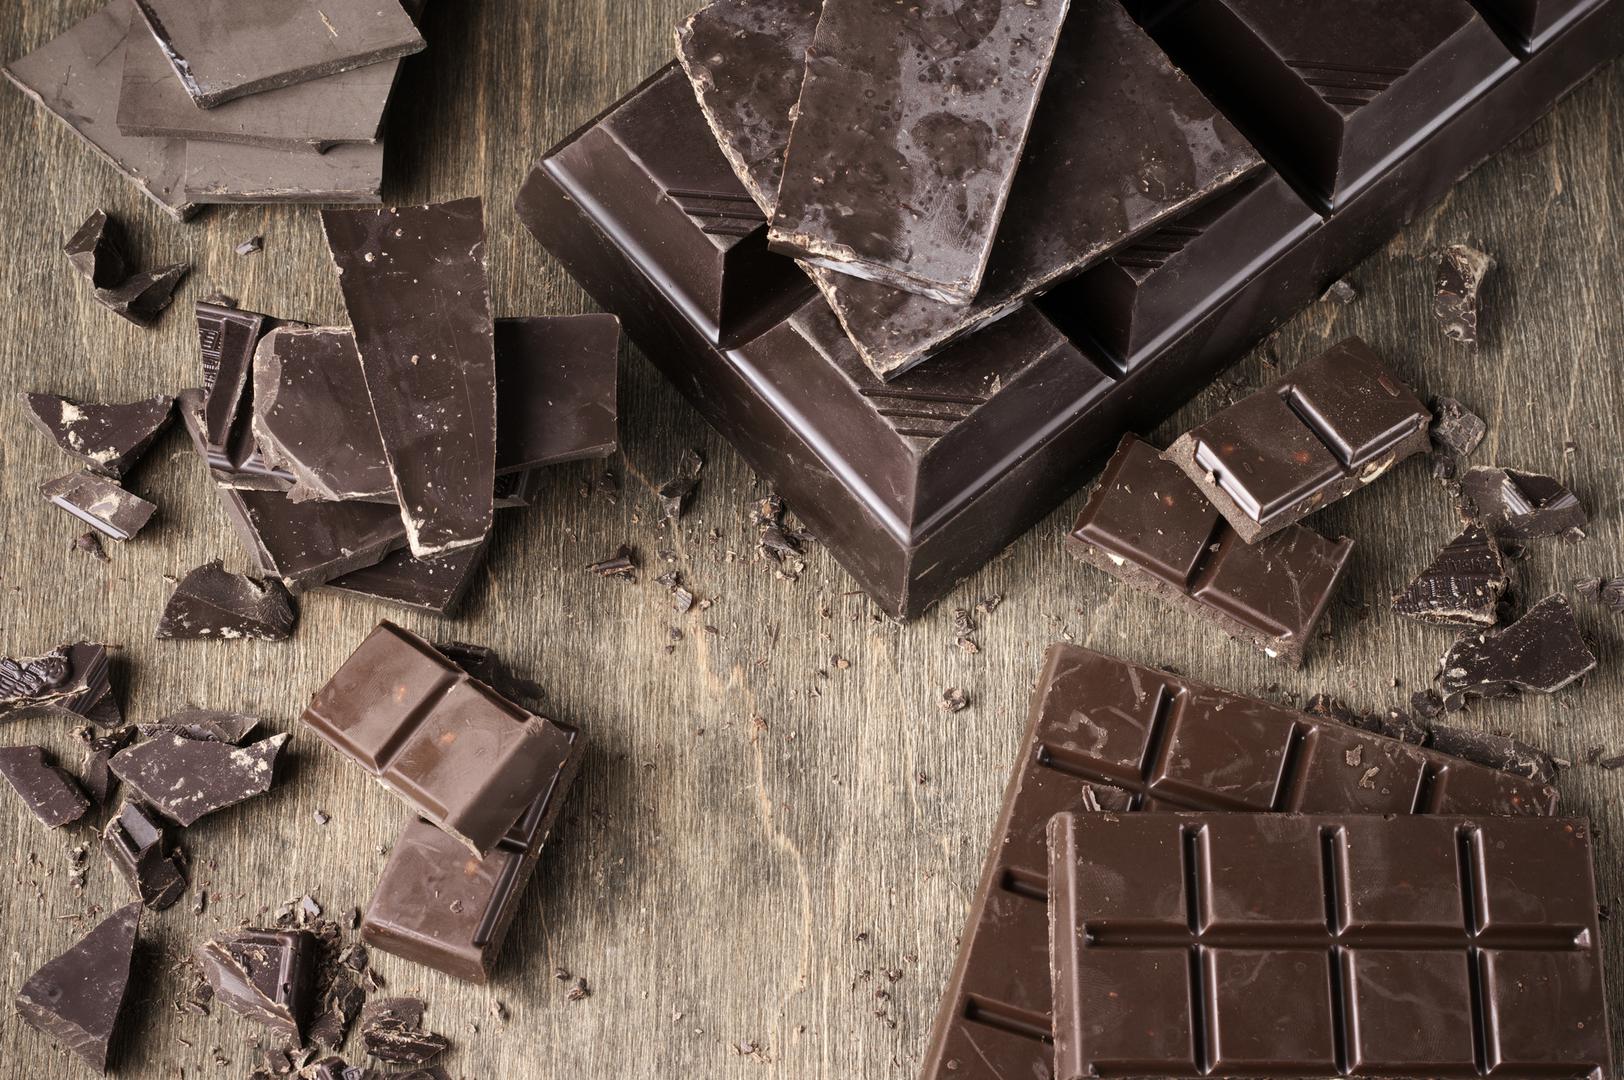 Čokolada je afrodizijak – Ograničeni su dokazi da je čokolada afrodizijak jer su vrlo male količine u čokoladi koje potiču seksualnu želju.